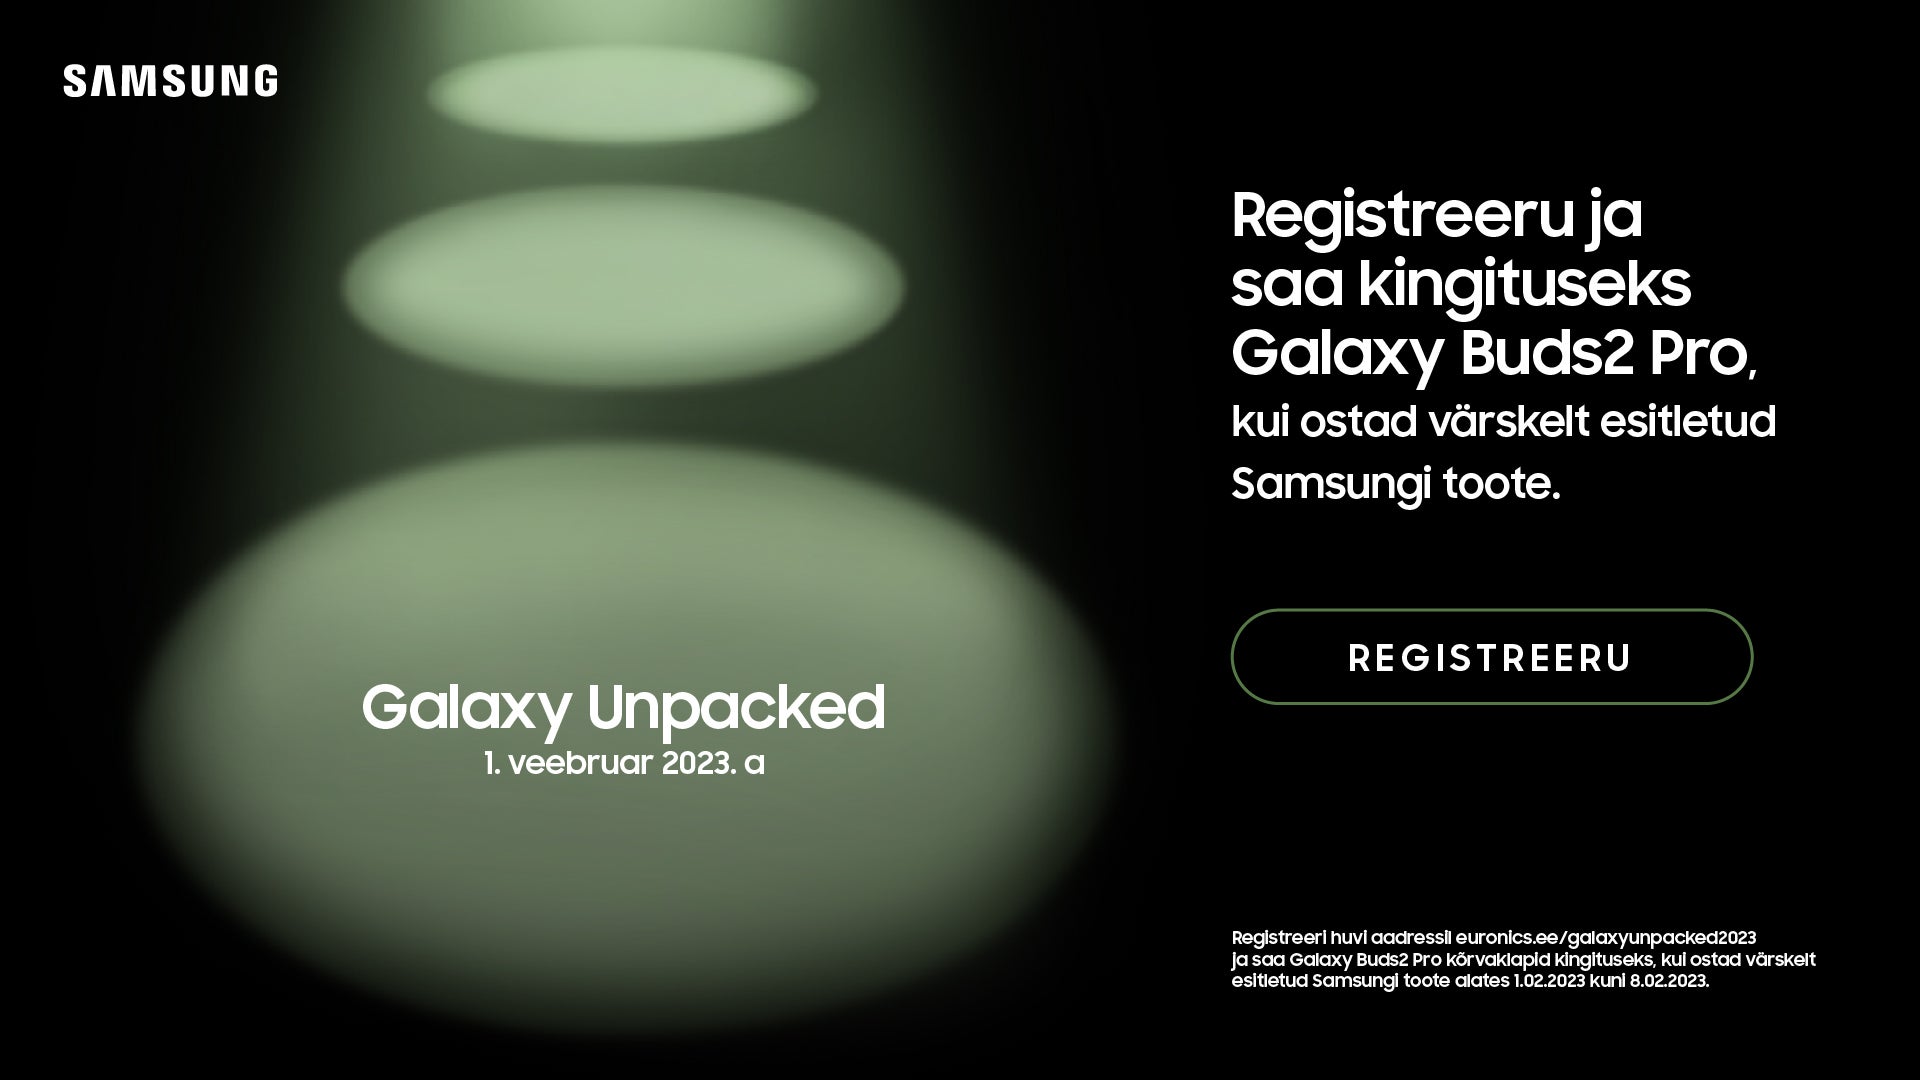 Samsung Estonia puede haber revelado el regalo de pedido anticipado de la serie Galaxy S23 y su fecha de lanzamiento: Samsung revela sin darse cuenta la fecha de lanzamiento del Galaxy S23 y el regalo de pedido anticipado